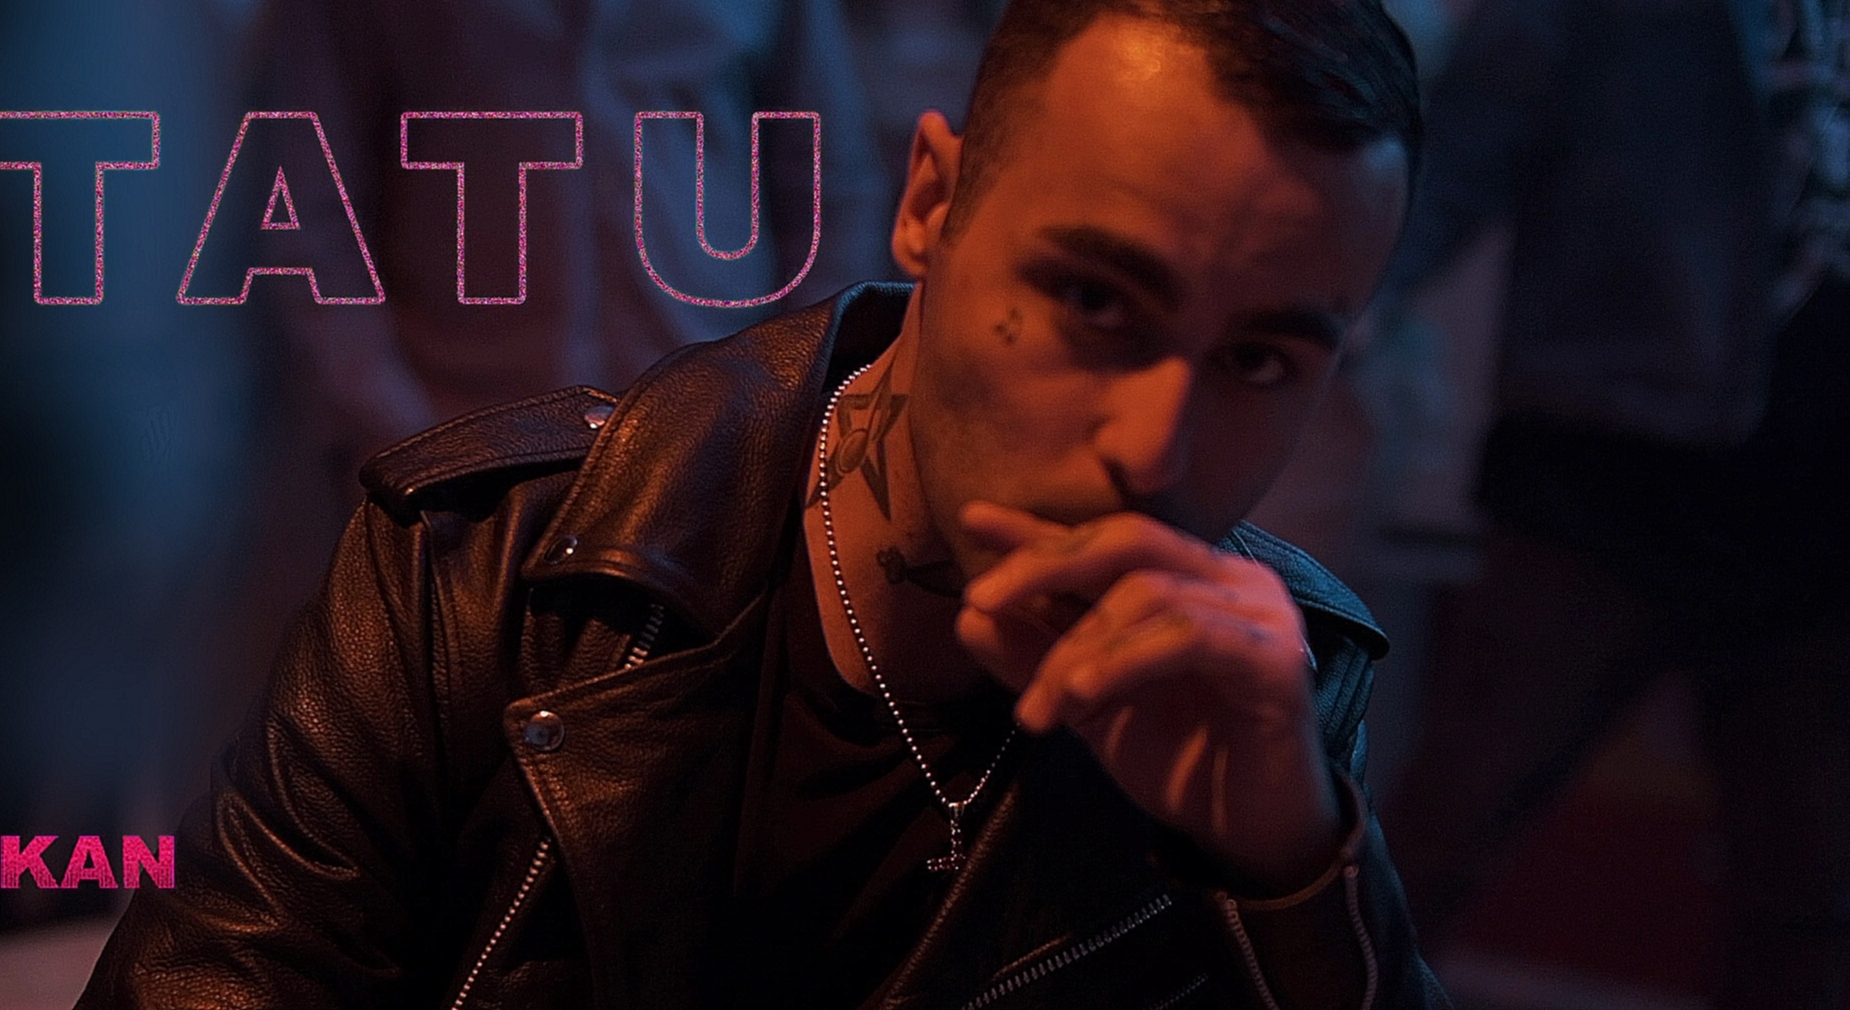 KAN – Tatu (премьера клипа, 2018) - видеоклип на песню